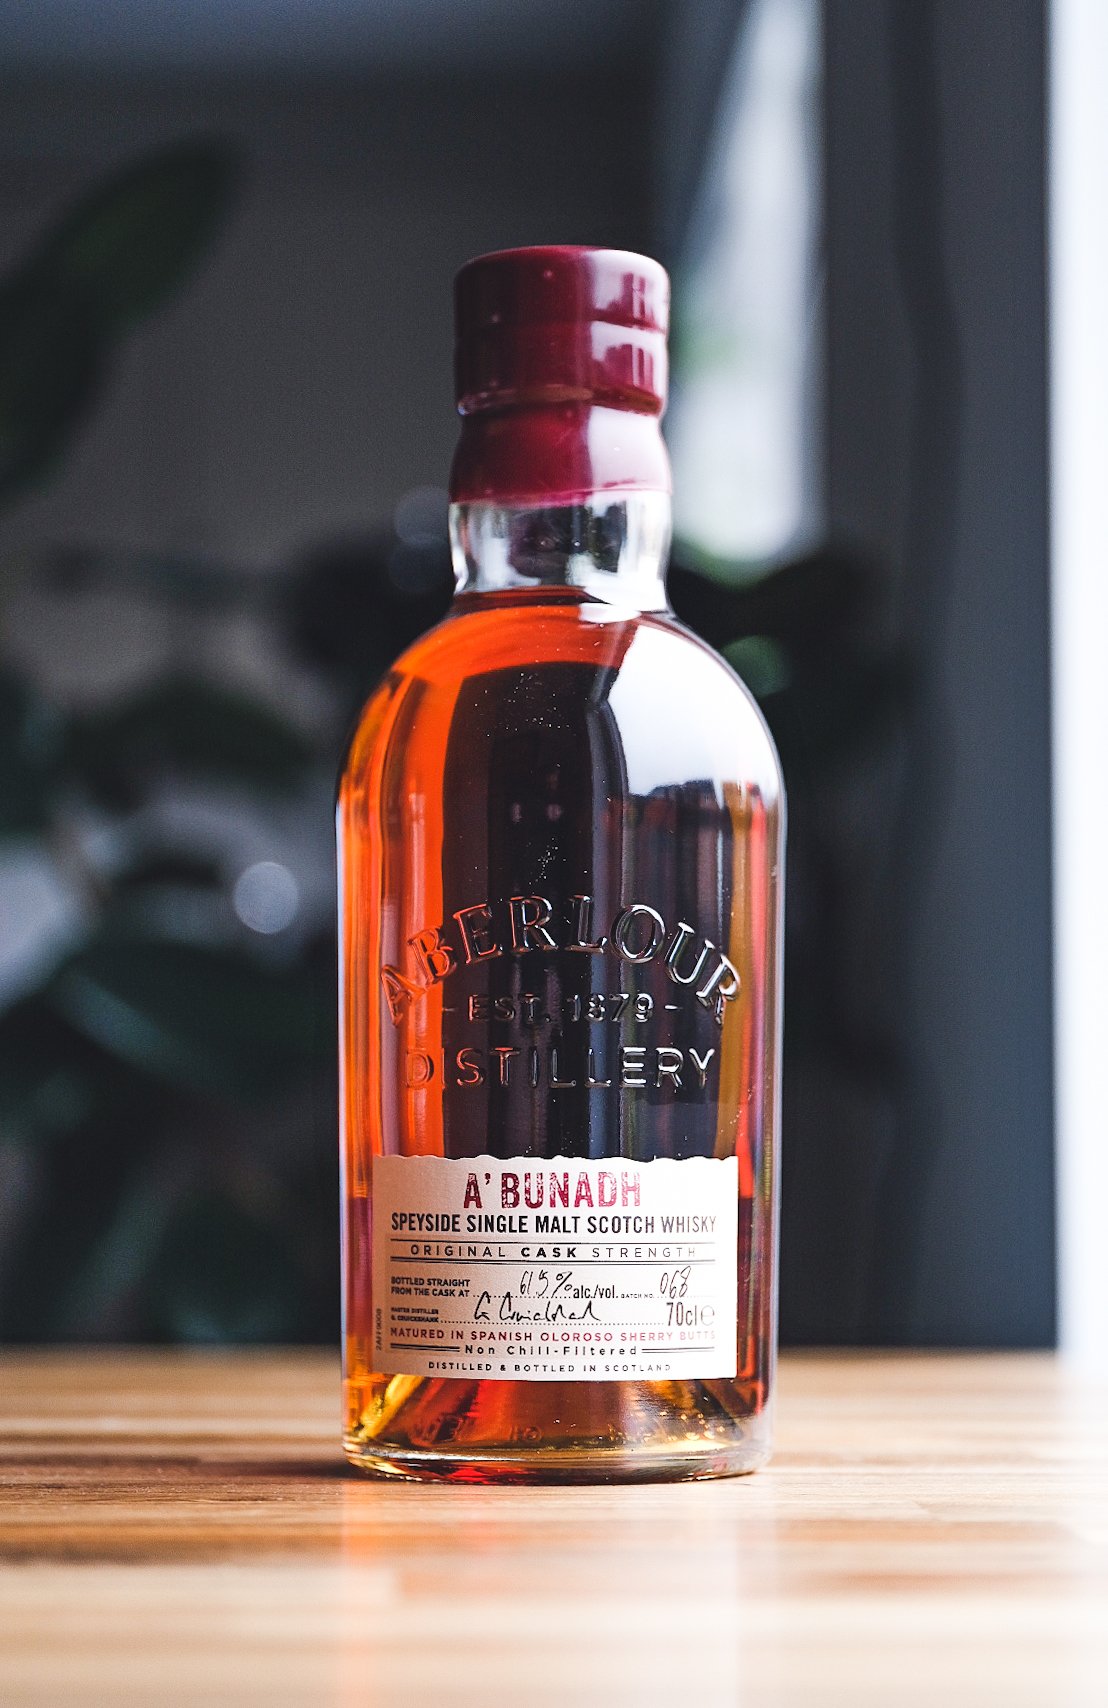 Blog Whisky Flavour: Cardhu 12 Ans D'âge - l'or Liquide